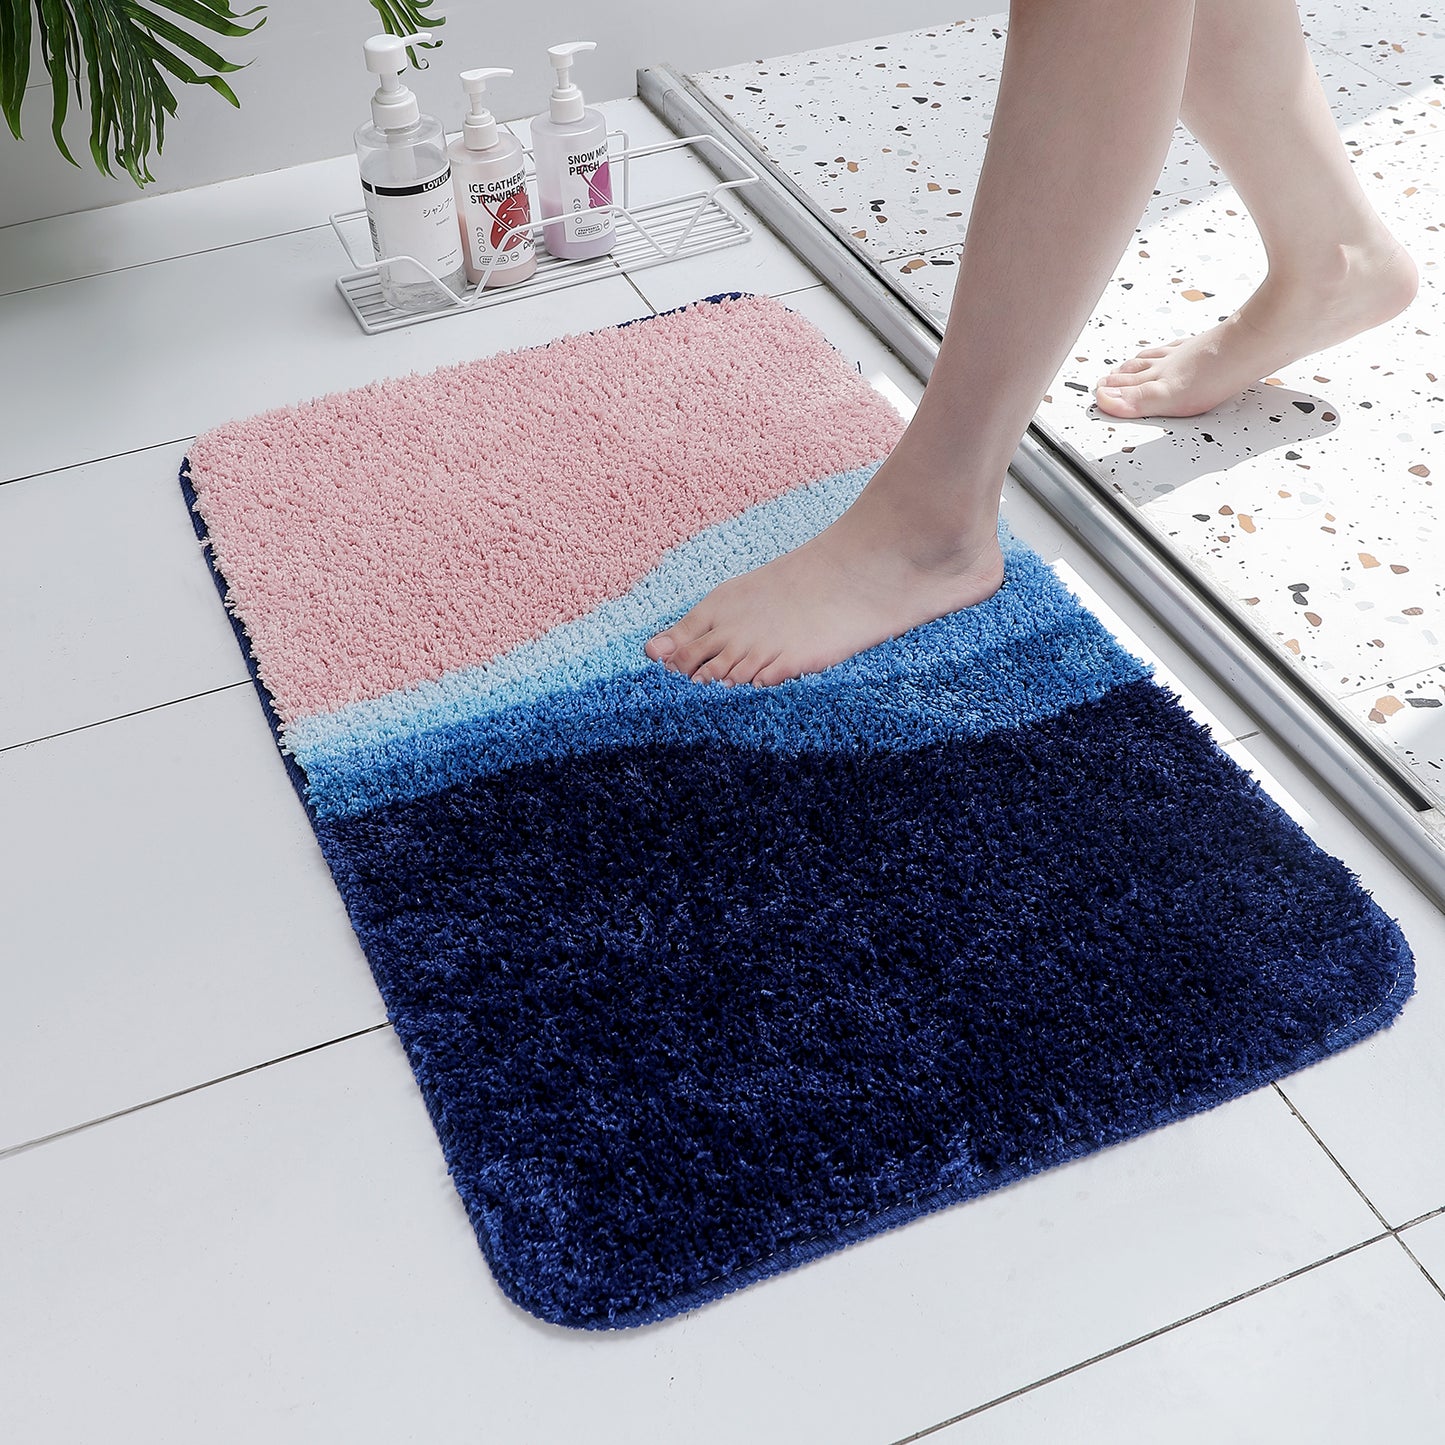 Blue River Bathroom Mat, Abstract Bath Mat, 50x80cm or 19x31 inches - Feblilac® Mat